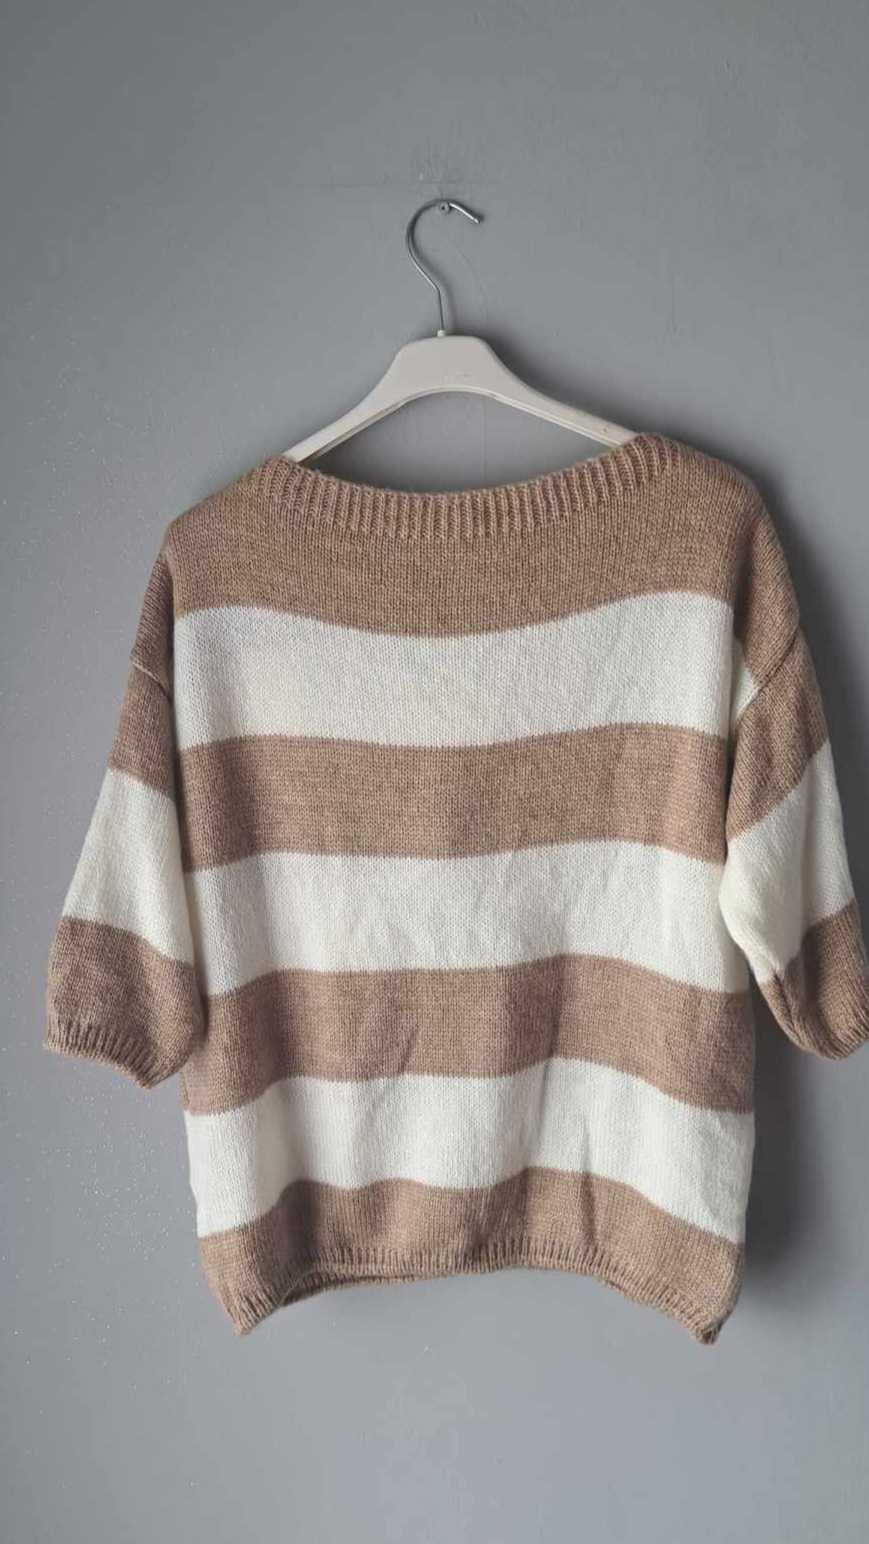 Kremowy brązowy sweter kokarda paski